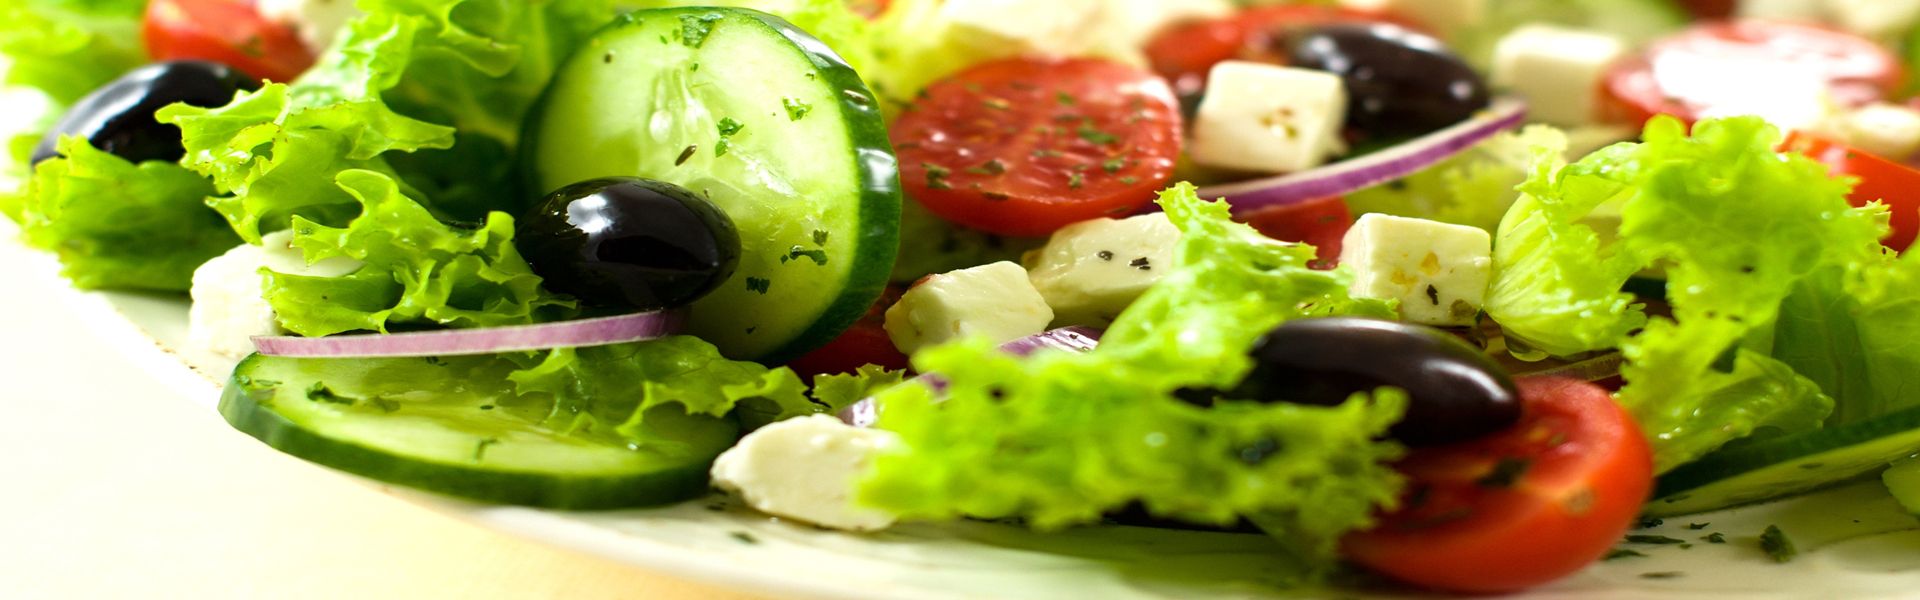 5 Vegetales altos en carbohidratos que debes evitar